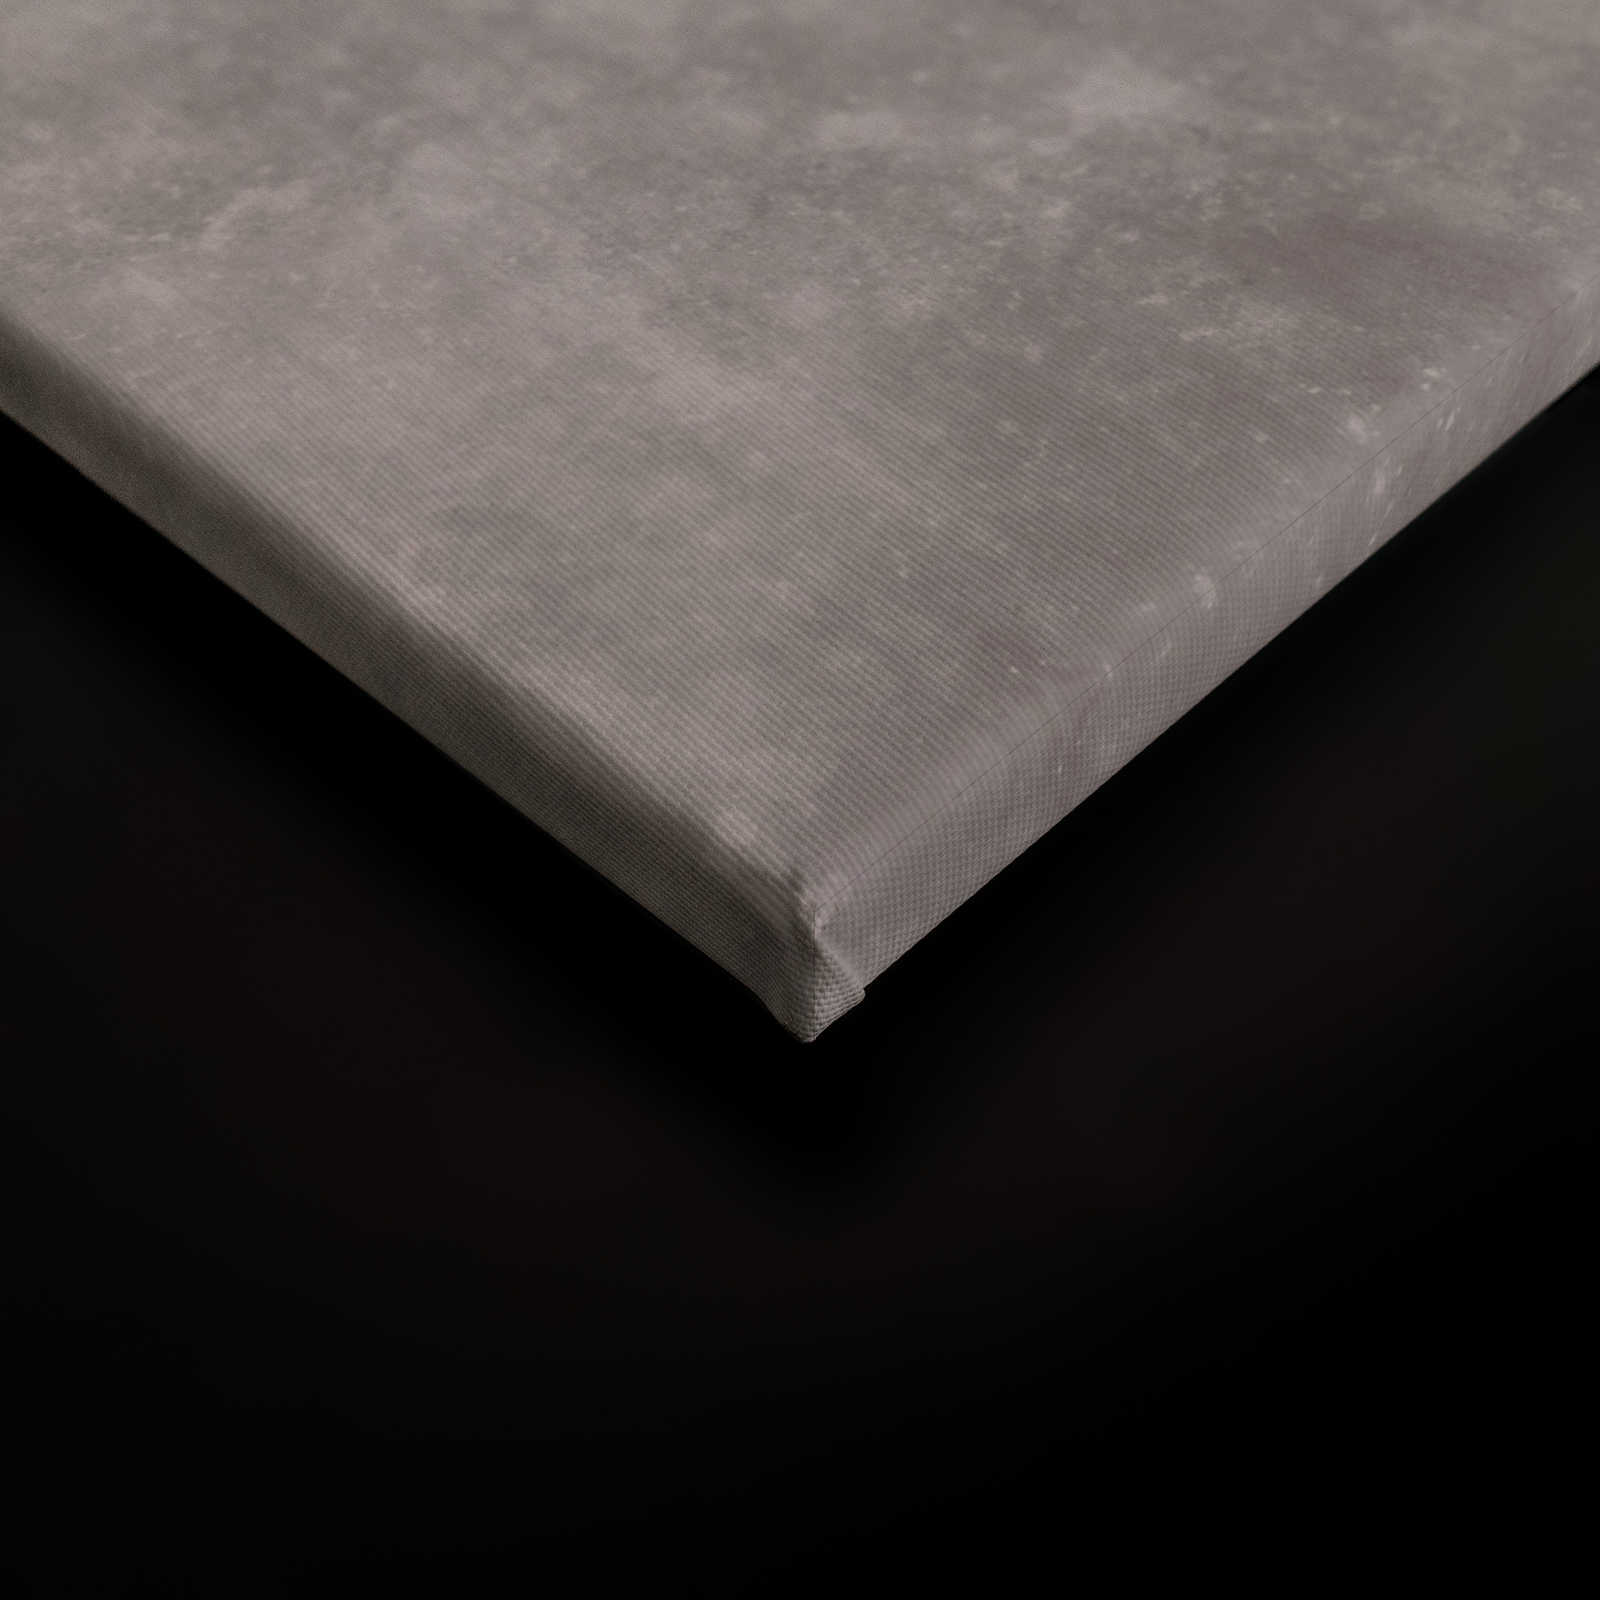             Toile aspect béton à rayures | gris, rose - 1,20 m x 0,80 m
        